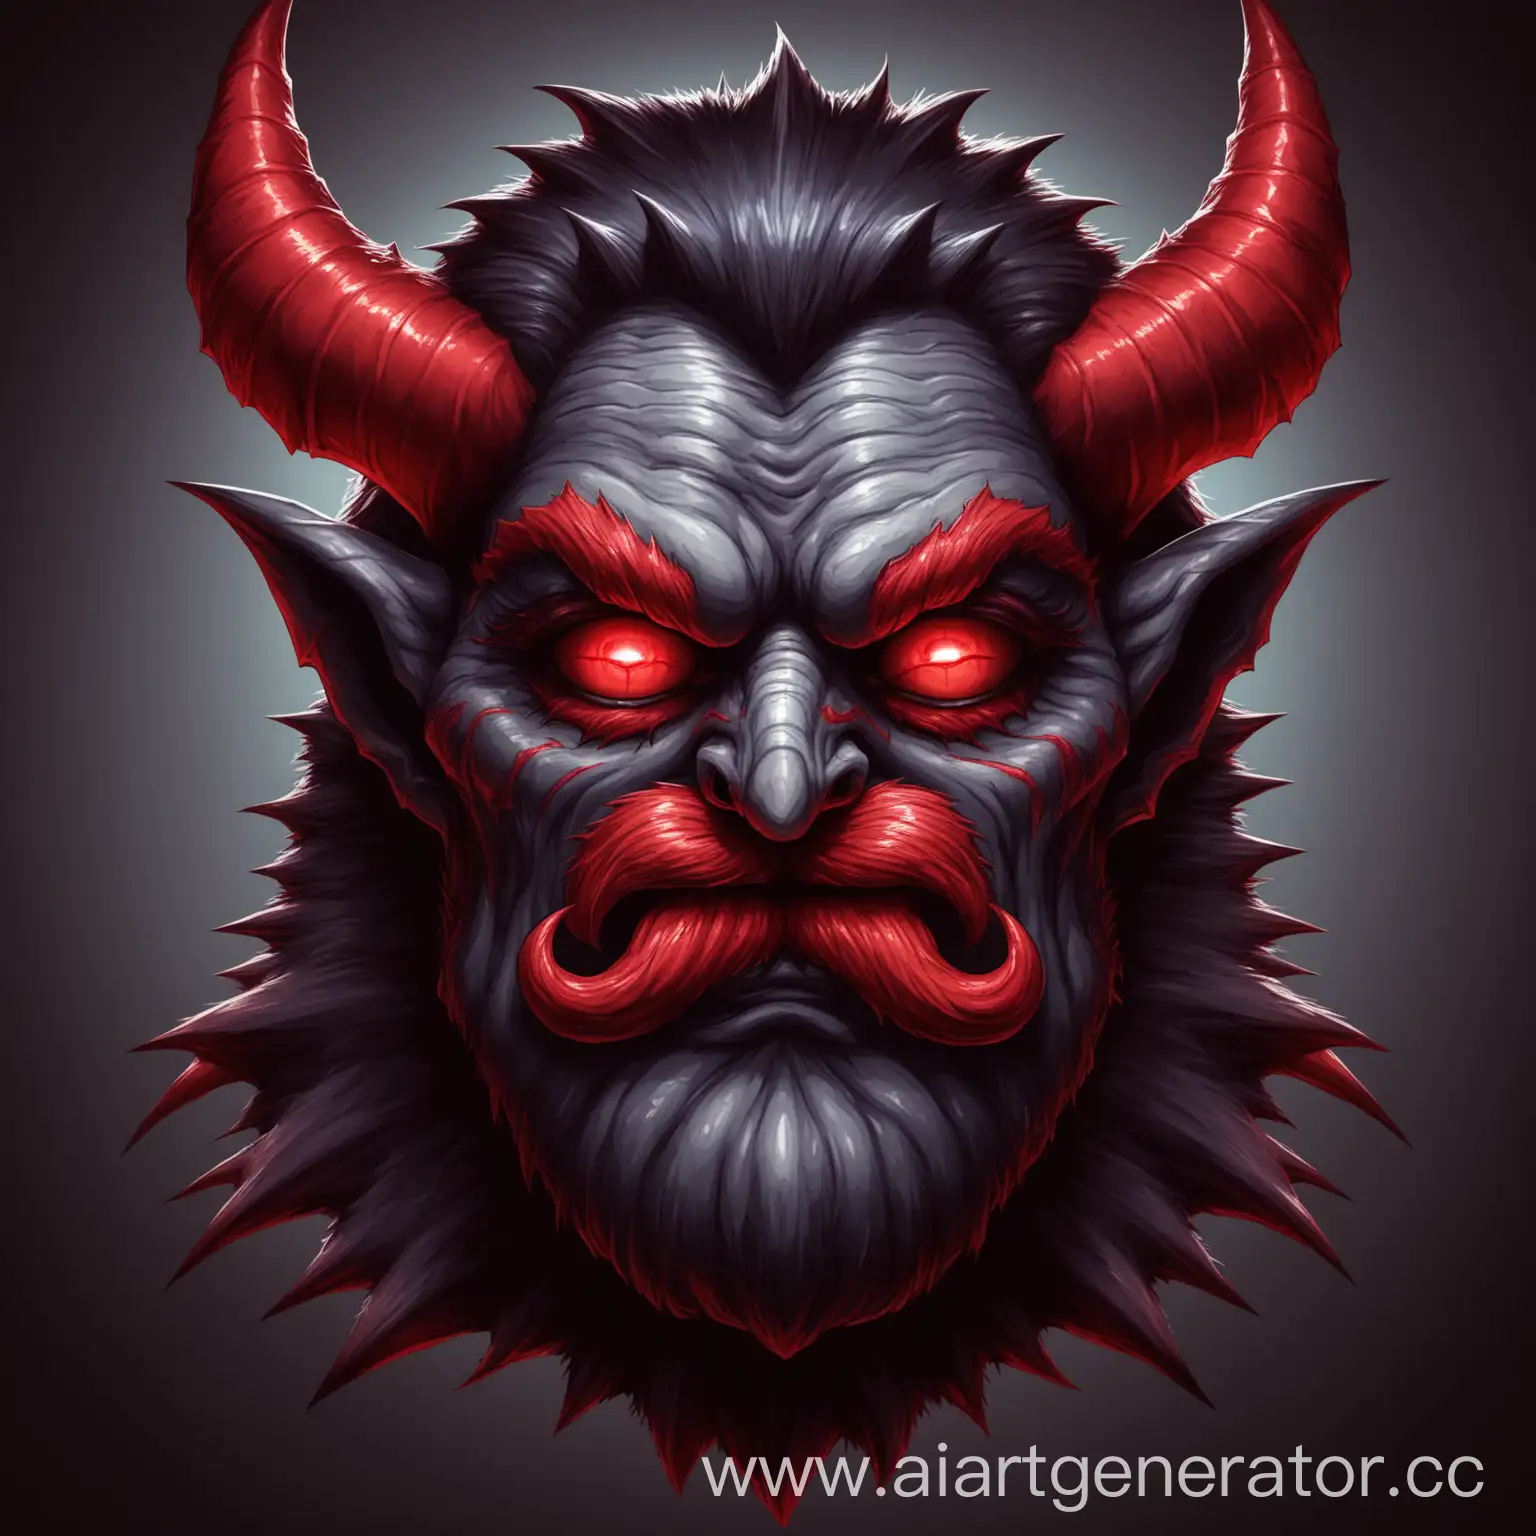 Голова демона монстра с красными глазами и усами